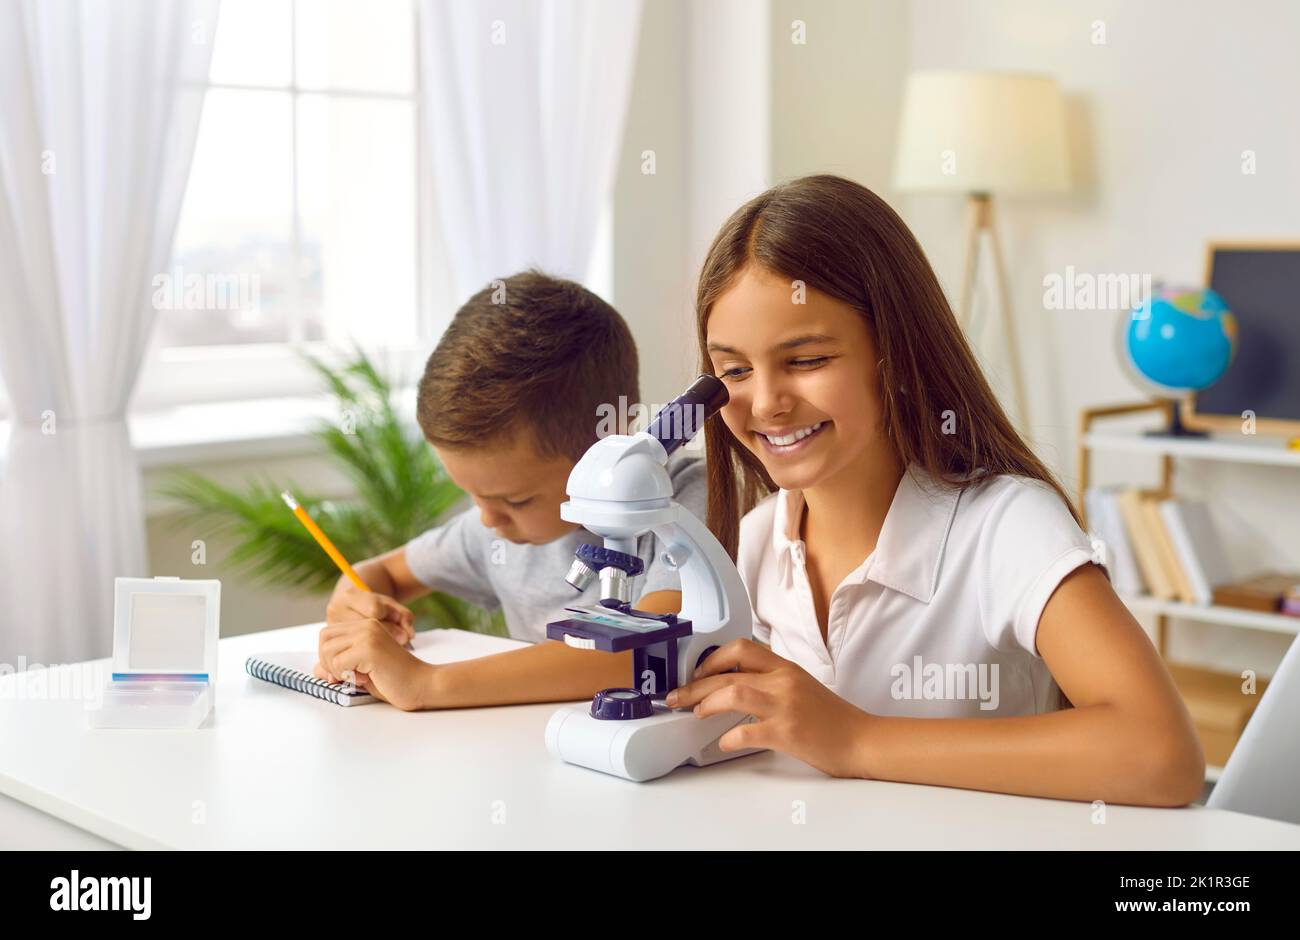 La studentessa sta guardando al microscopio a casa con il fratello minore, preparandosi per una lezione di scienza Foto Stock